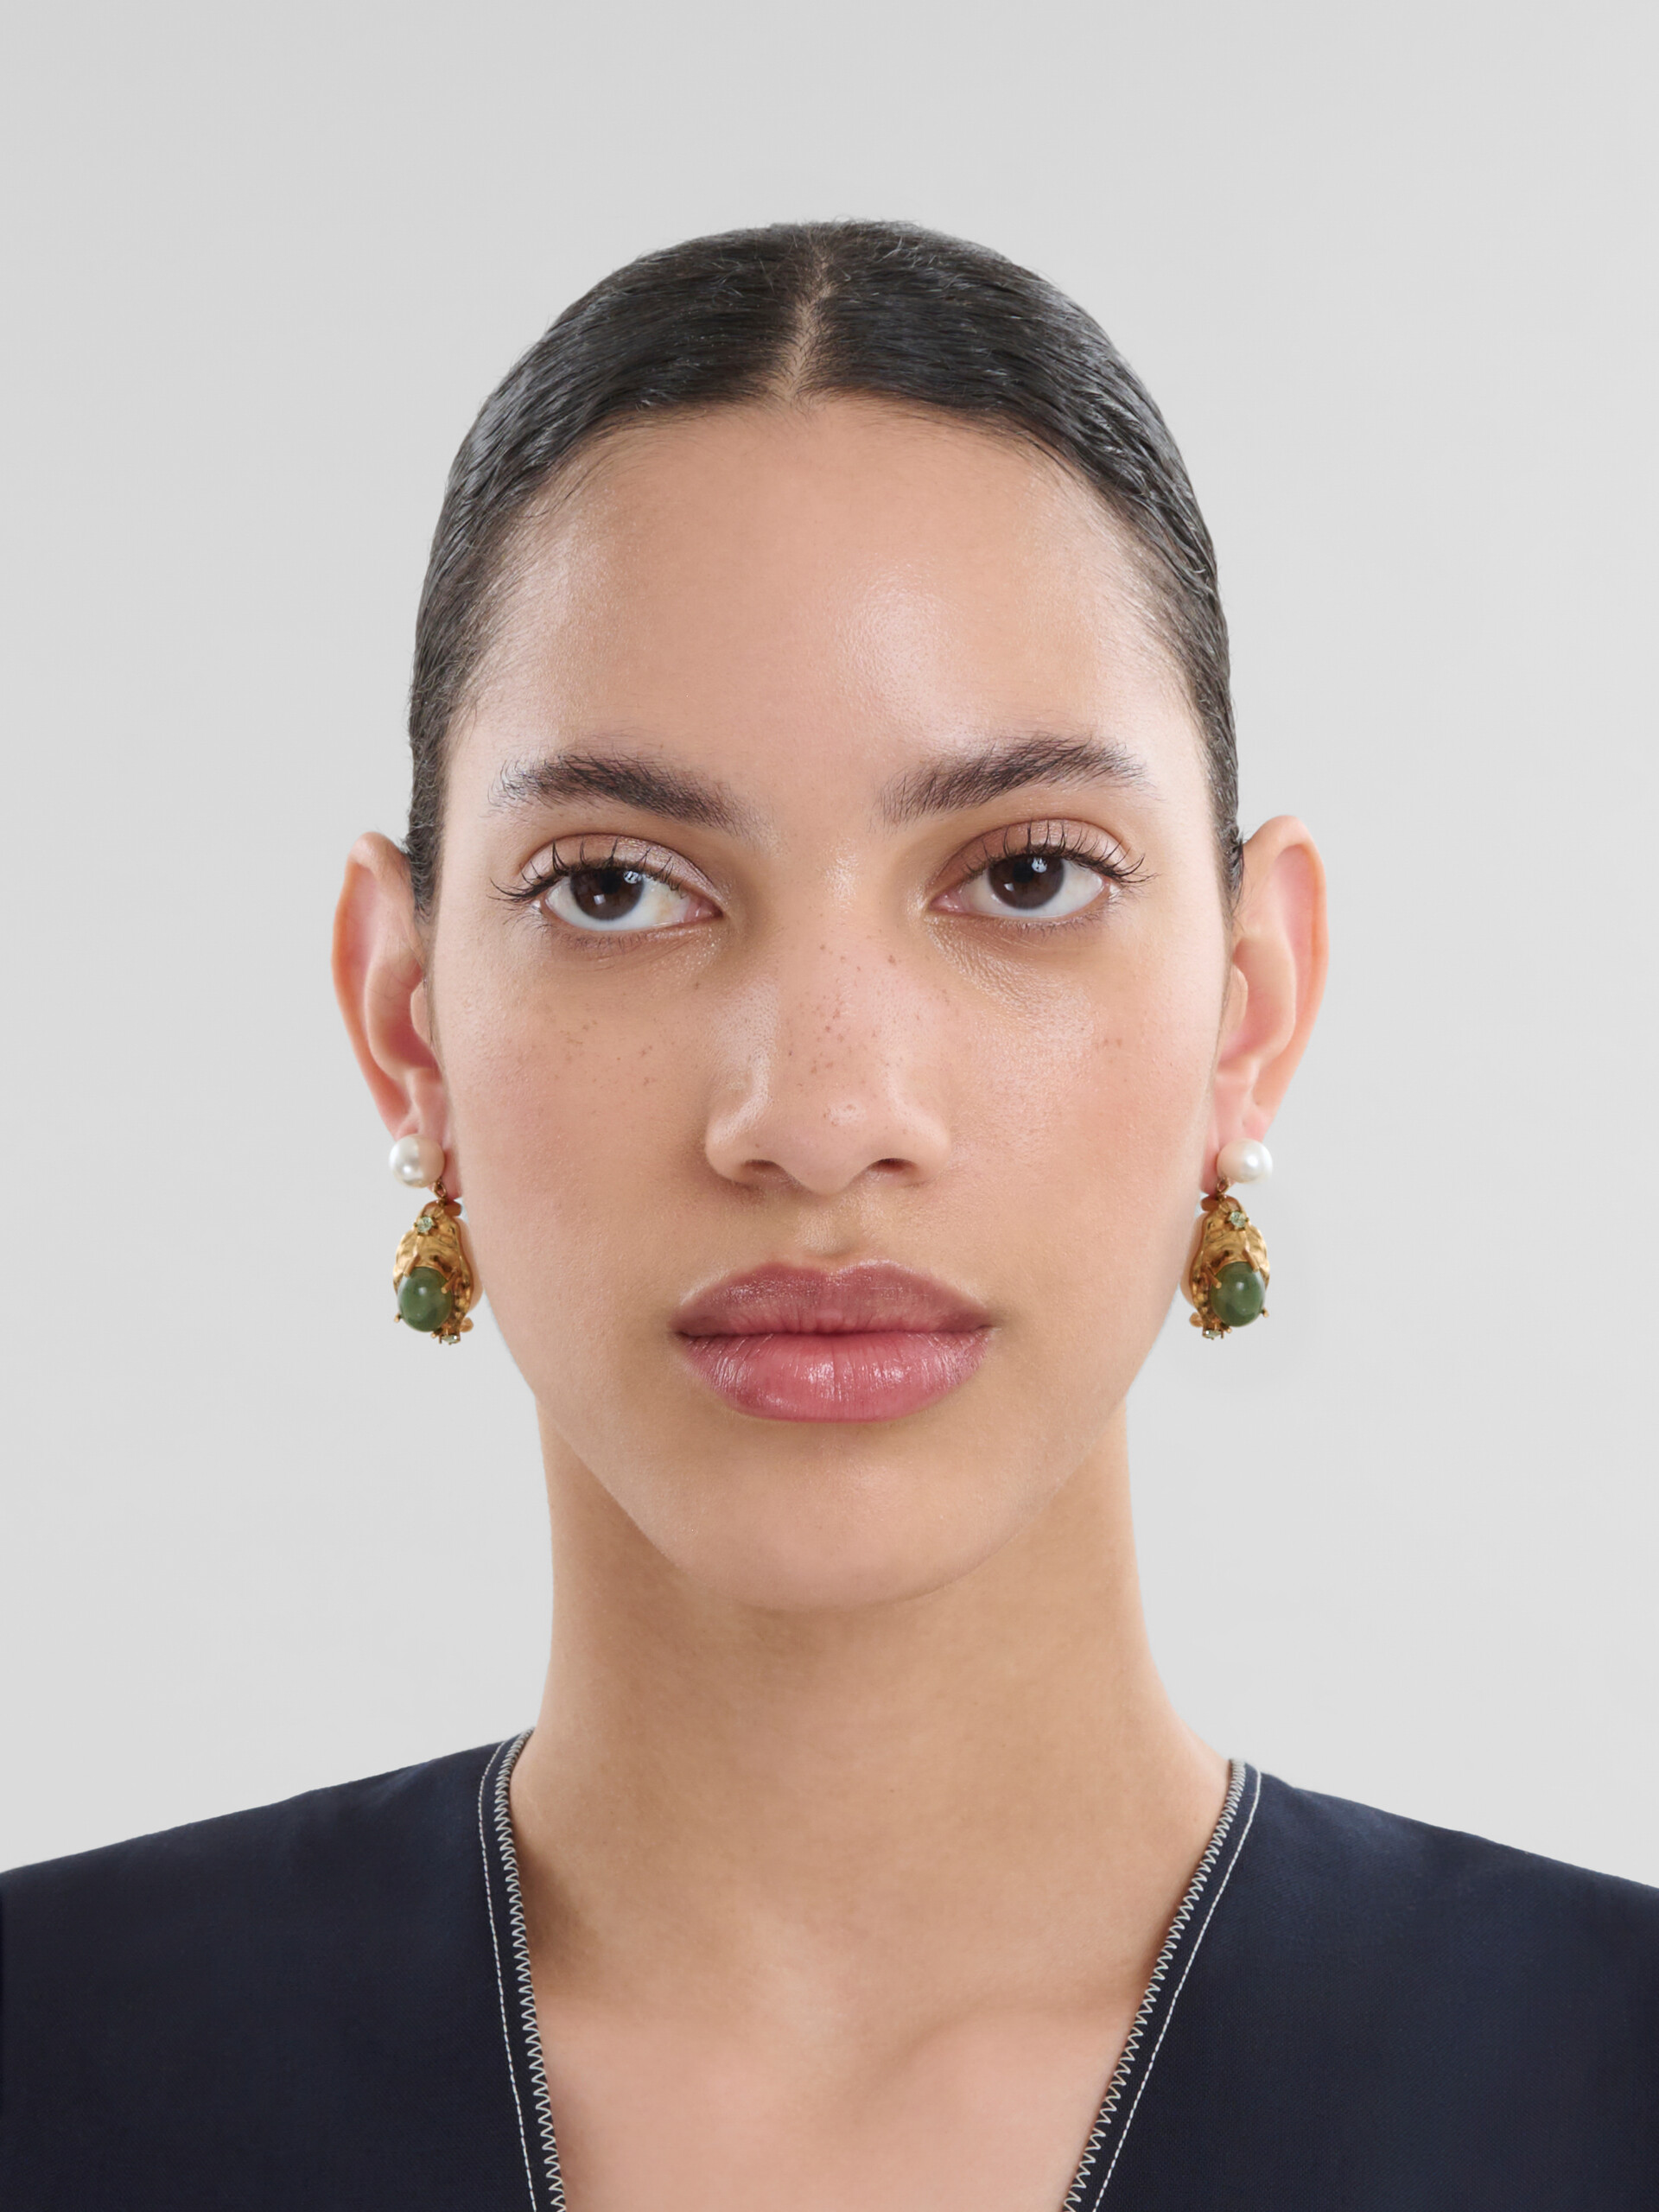 Pearl drop earrings with green gemstones - Earrings - Image 2